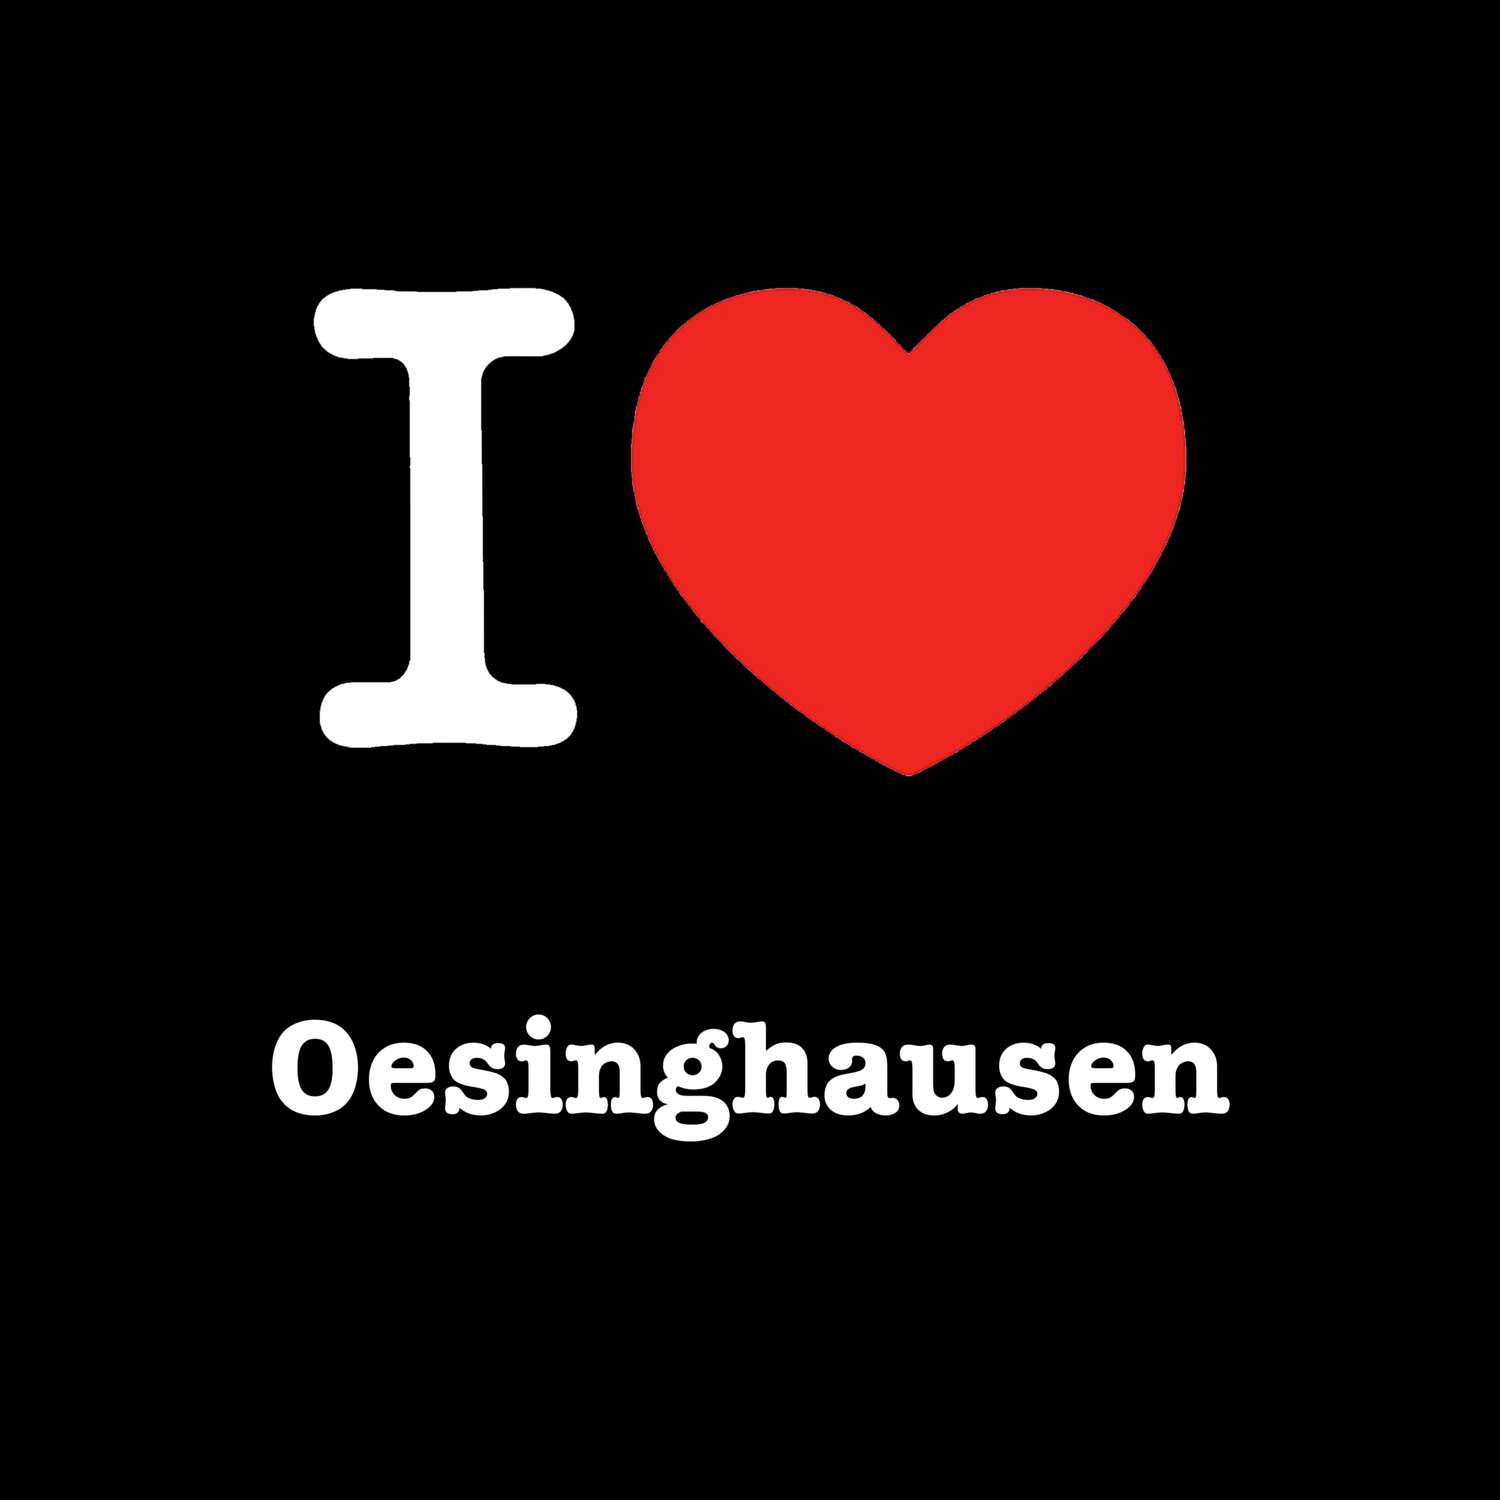 Oesinghausen T-Shirt »I love«